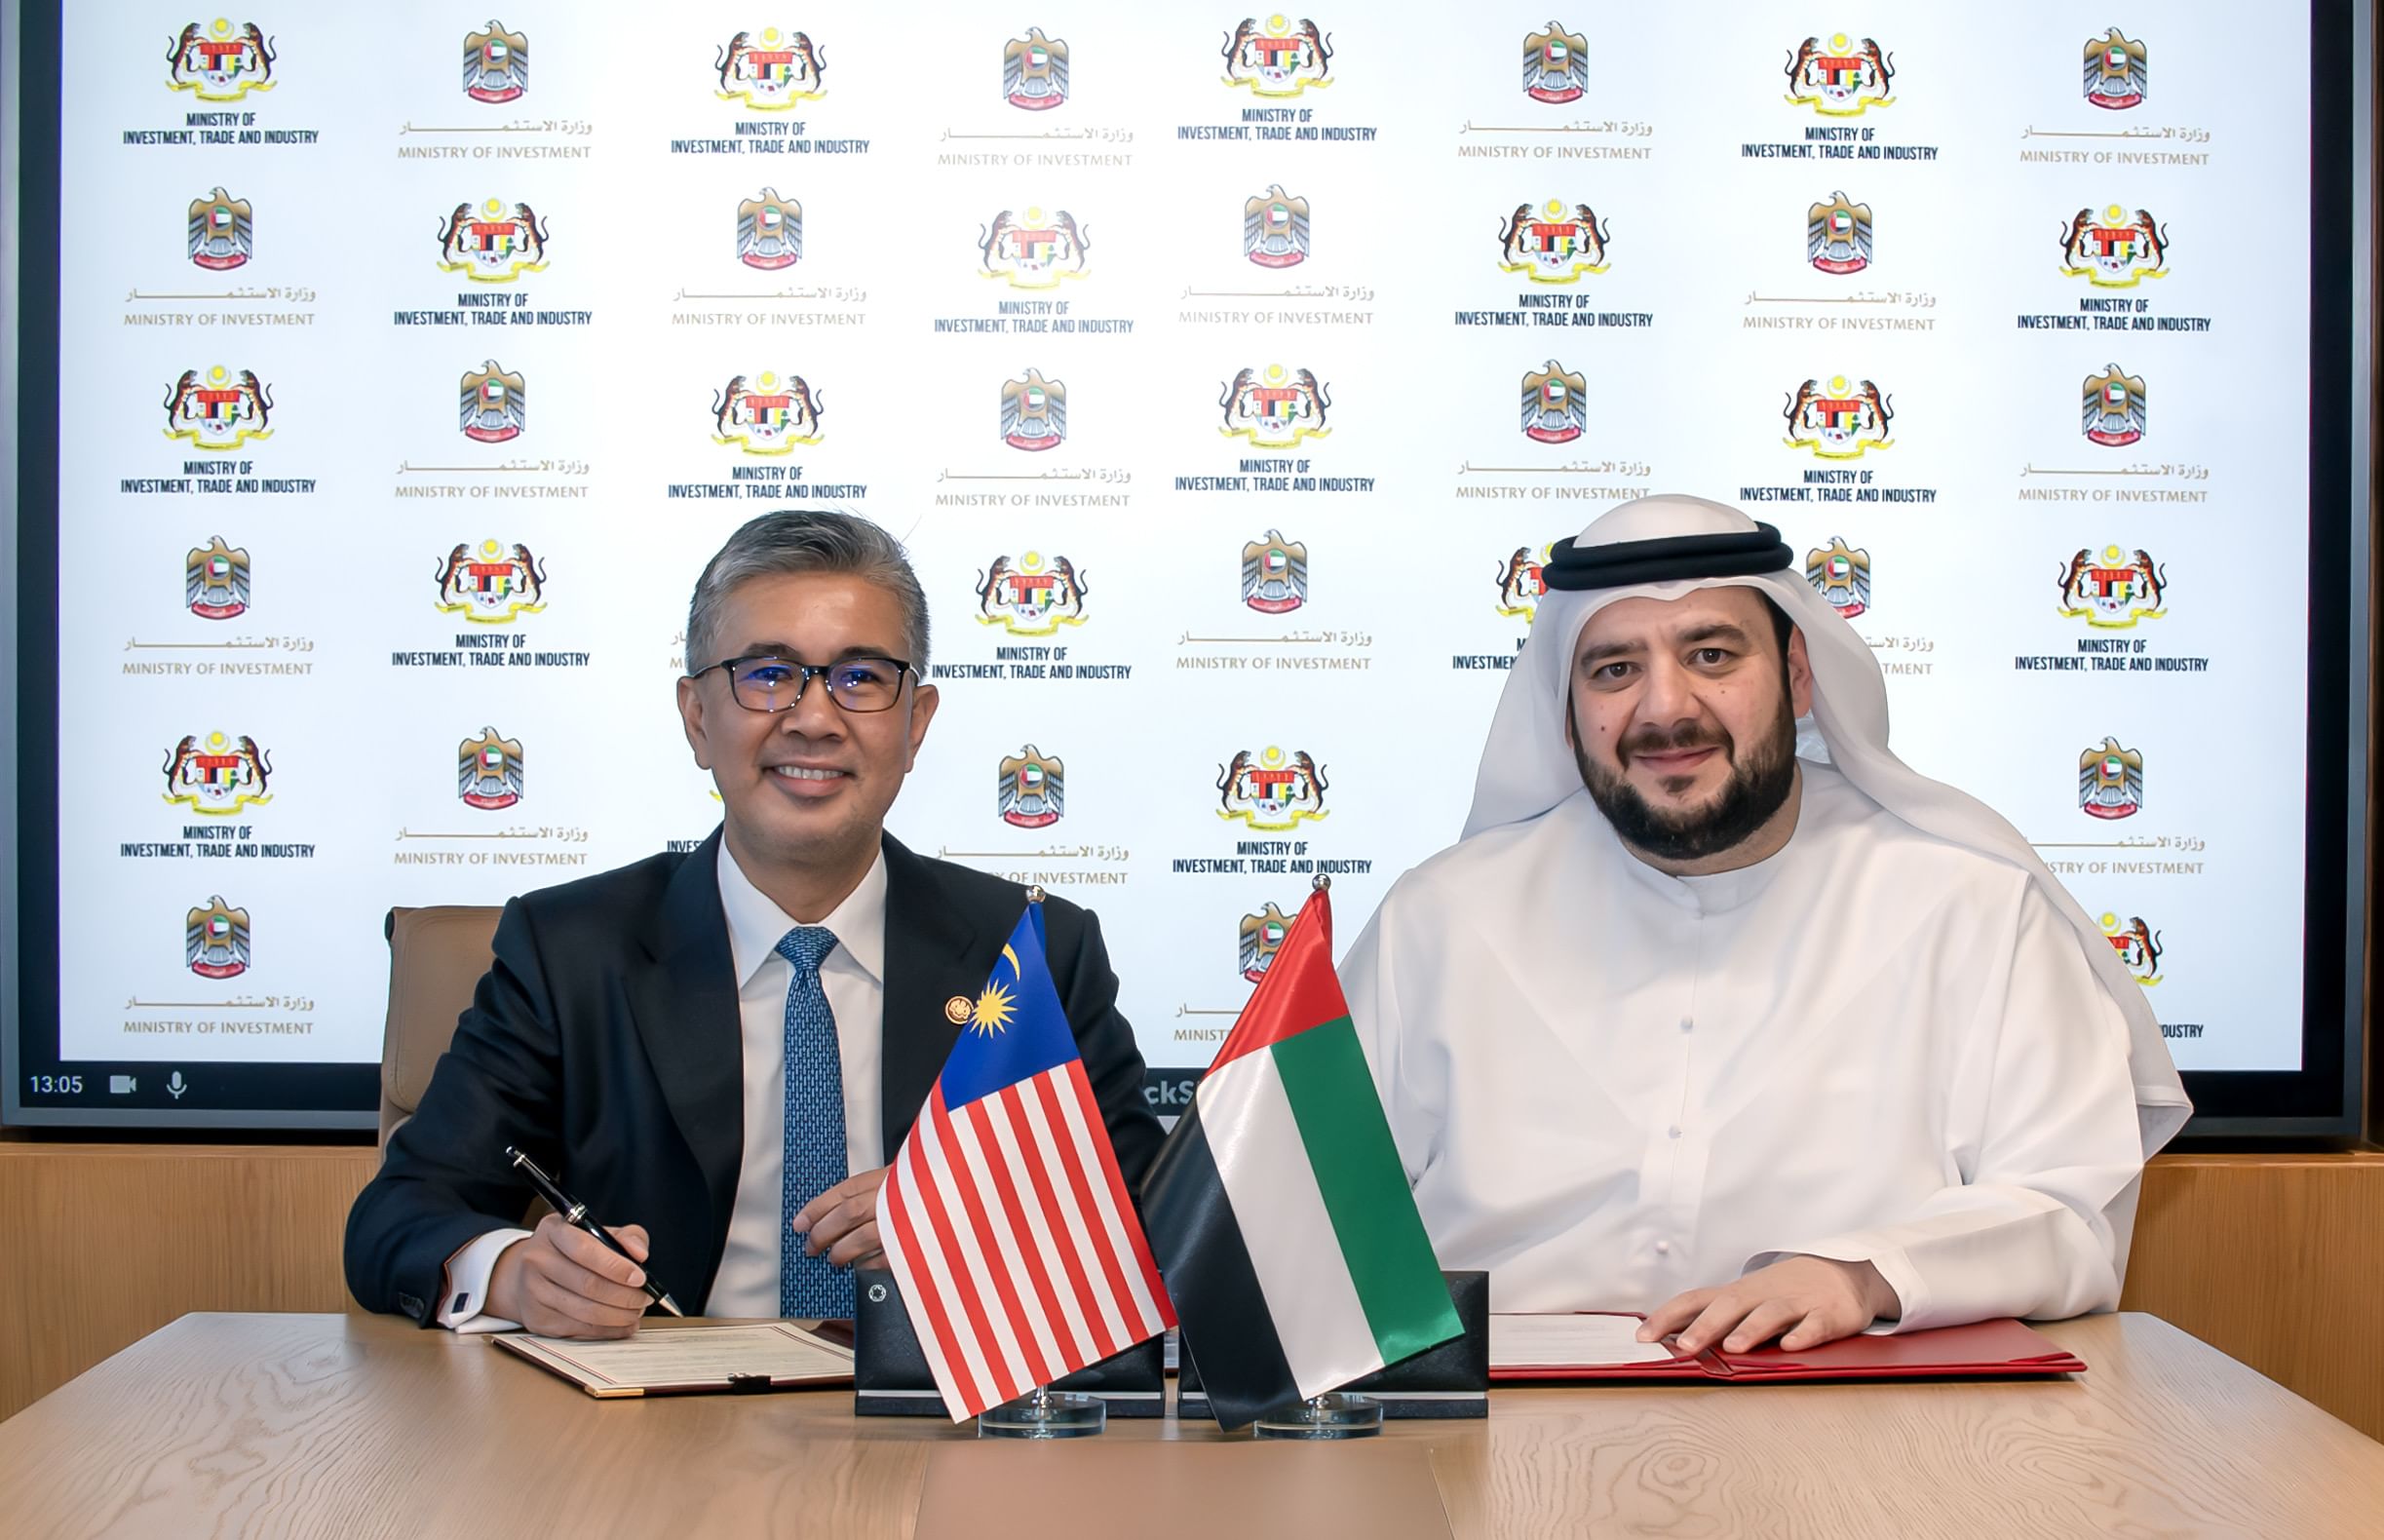 الإمارات وماليزيا تبرمان مذكرة تفاهم لتأسيس إطار للتعاون الاستثماري في قطاع البنية التحتية الرقمية